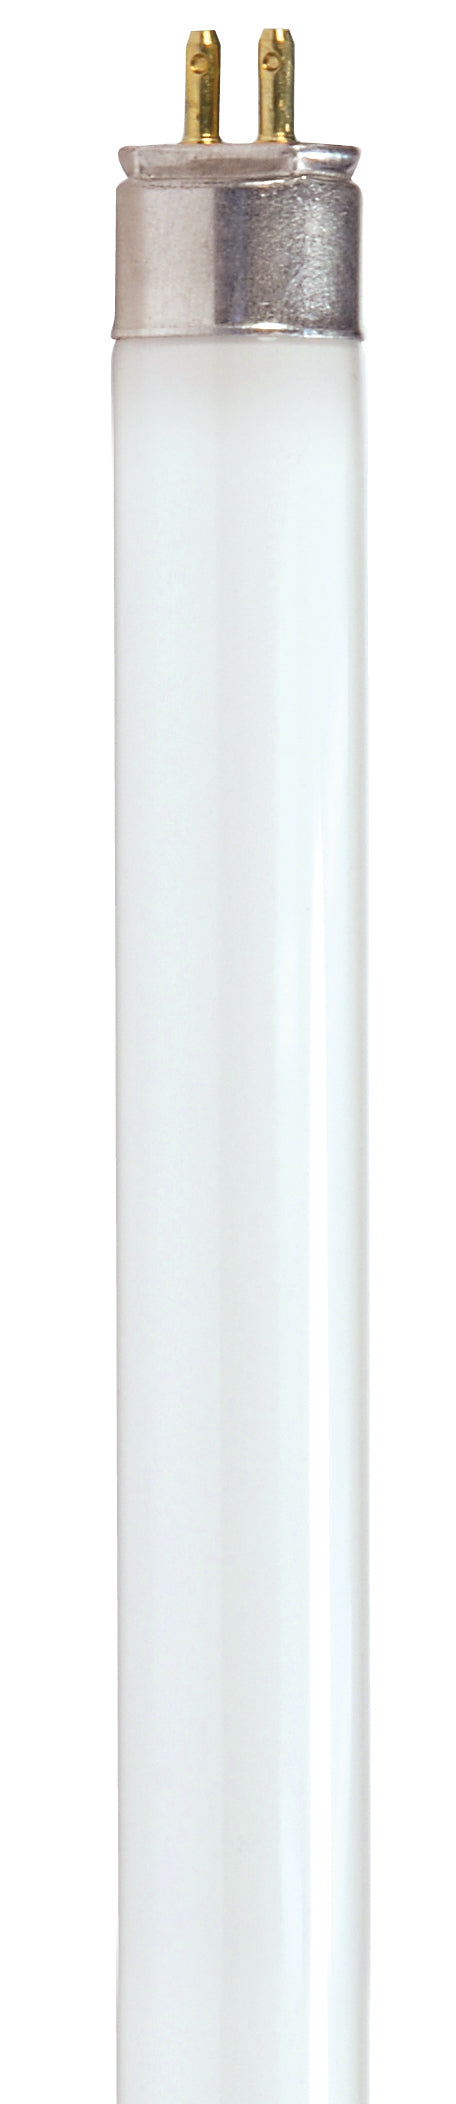 SATCO/NUVO HyGrade 54W T5 Fluorescent 4100K Cool White 85 CRI Miniature Bi-Pin Base (S8145-TF)